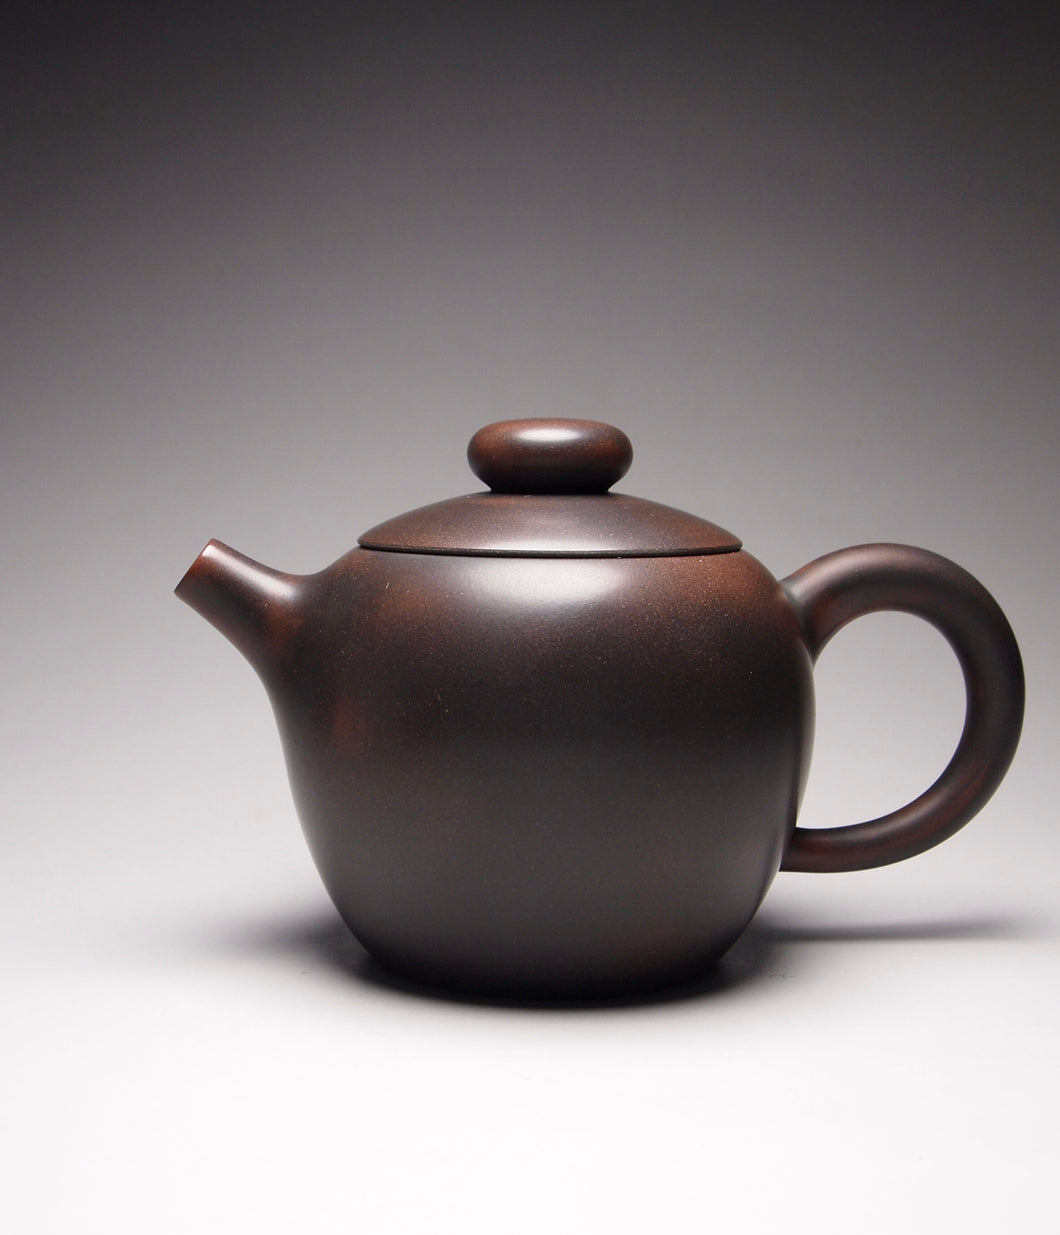 130ml Julunzhu Nixing Teapot by Wu Sheng Sheng 吴盛胜坭兴巨轮珠壶